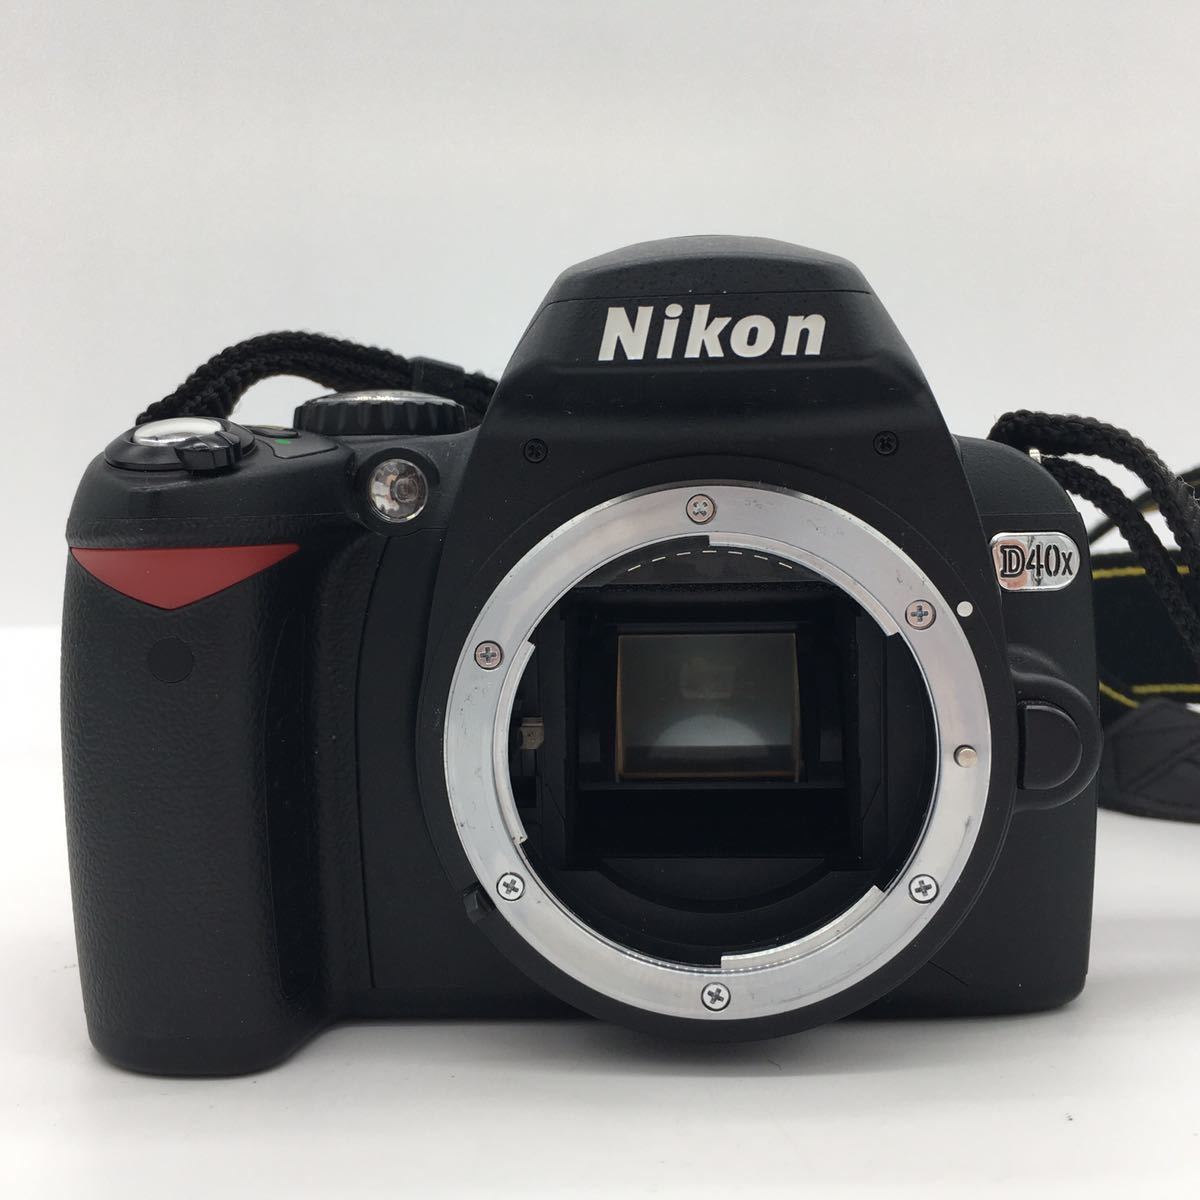 ニコン Nikon D40x AF-S DX NIKKOR 55-200mm 1:4-5.6G ED VR デジタル 一眼レフ カメラ 充電器・バッテリー・カメラケース付属 動作確認済_画像2